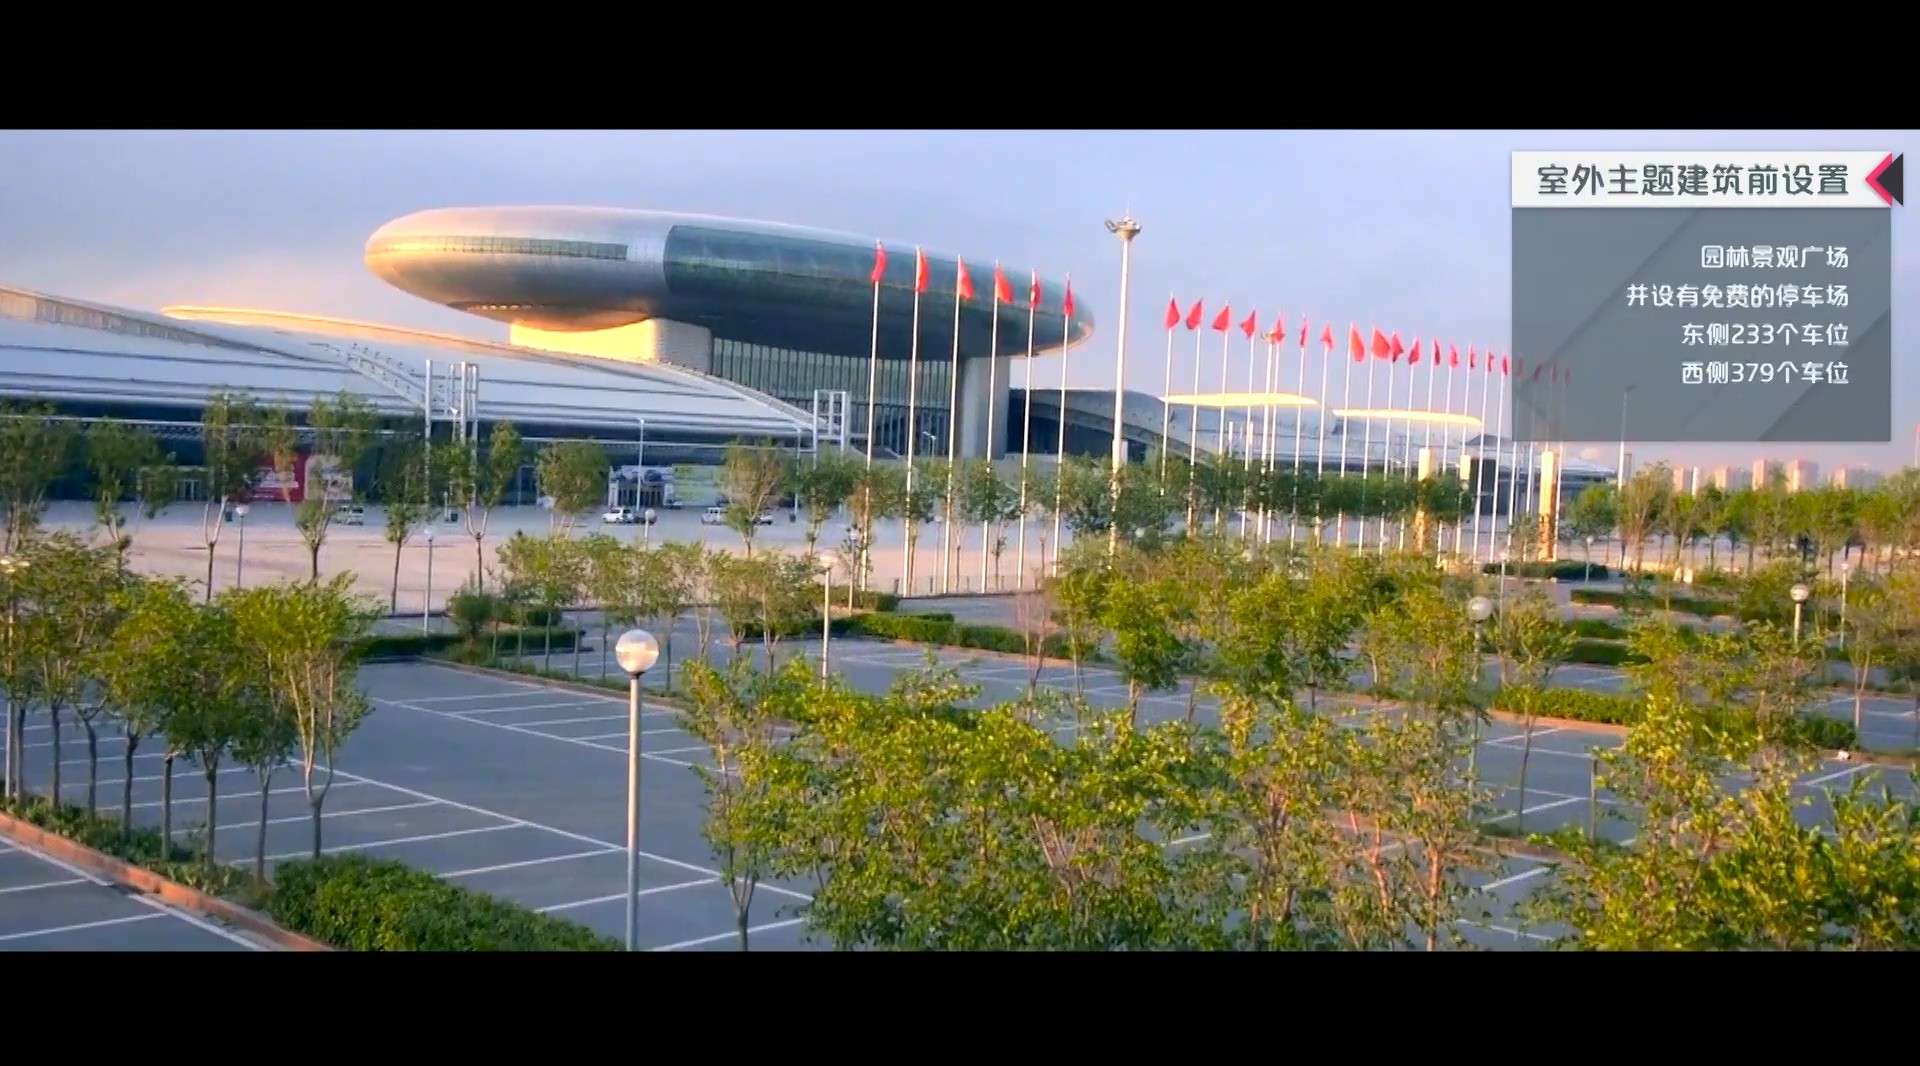 新疆会展中心2018年